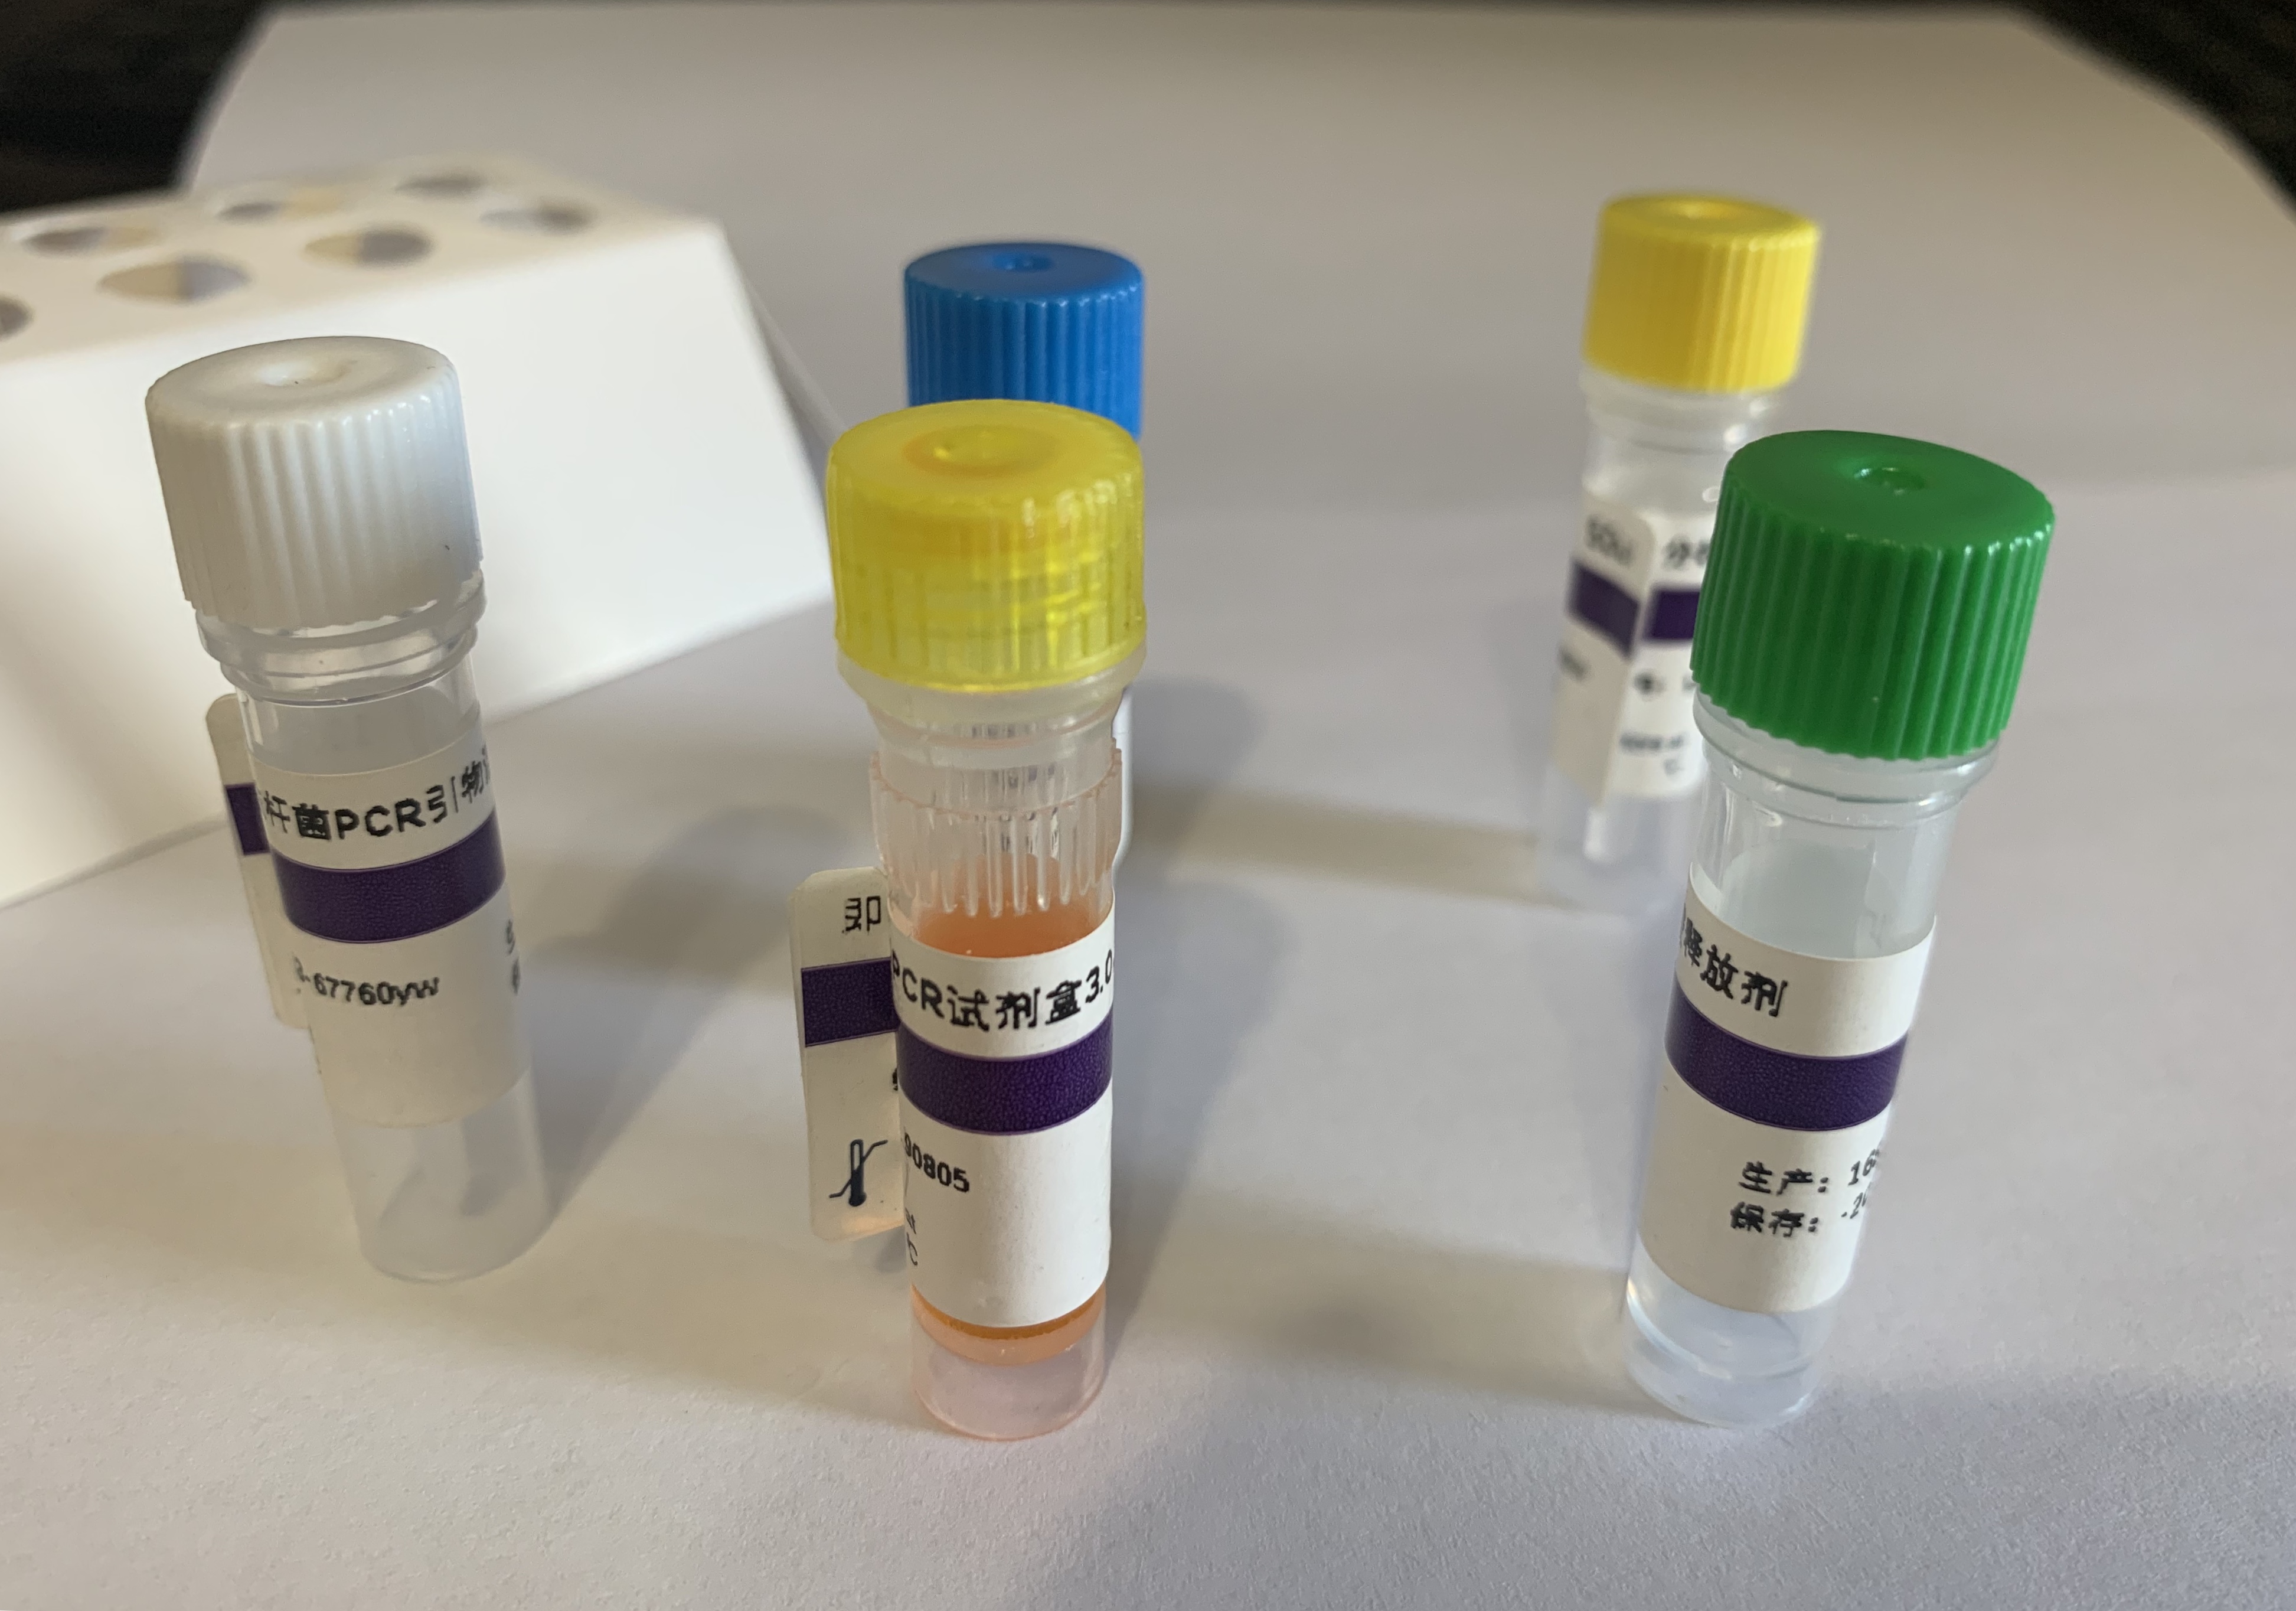 甲型流感（禽流感）病毒H5亚型探针法荧光定量RT-PCR试剂盒